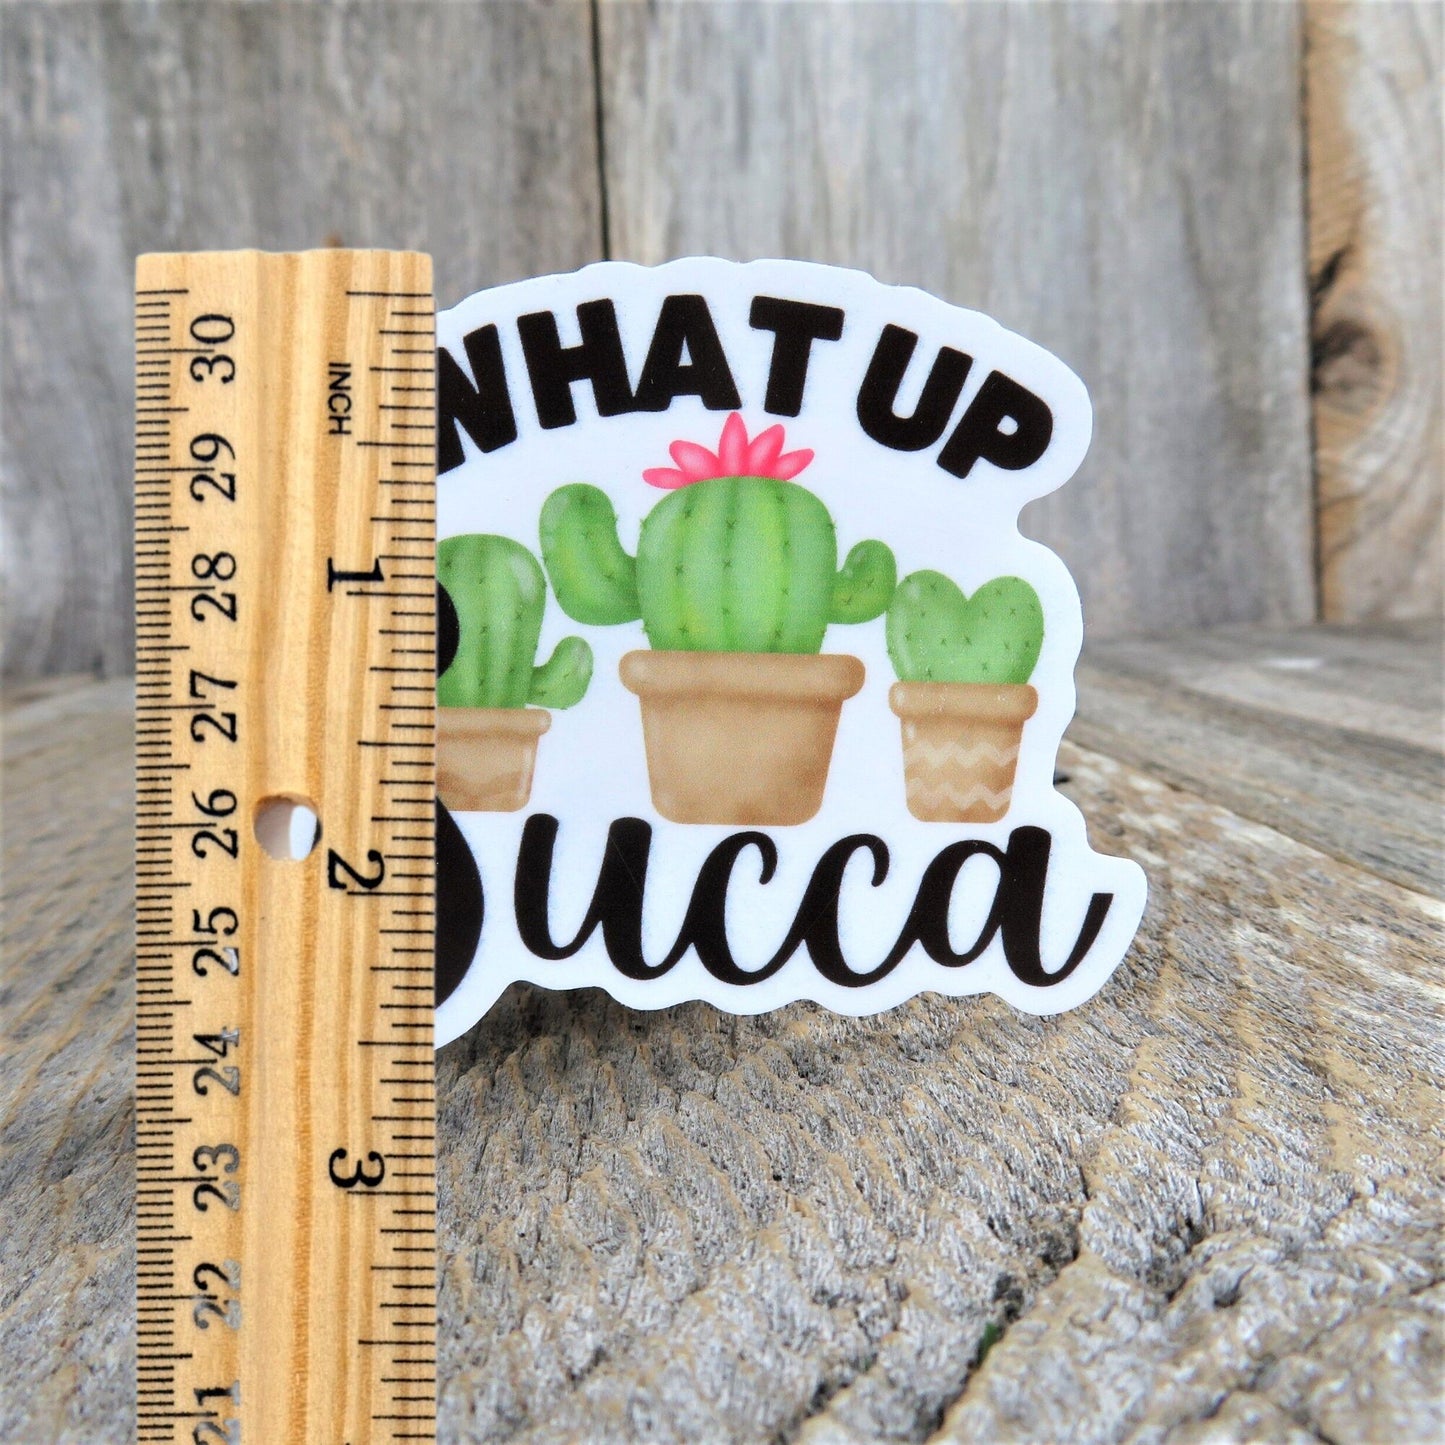 What Up Succa Sticker Funny Succulent Plant Addict Cactus Lover Gardener